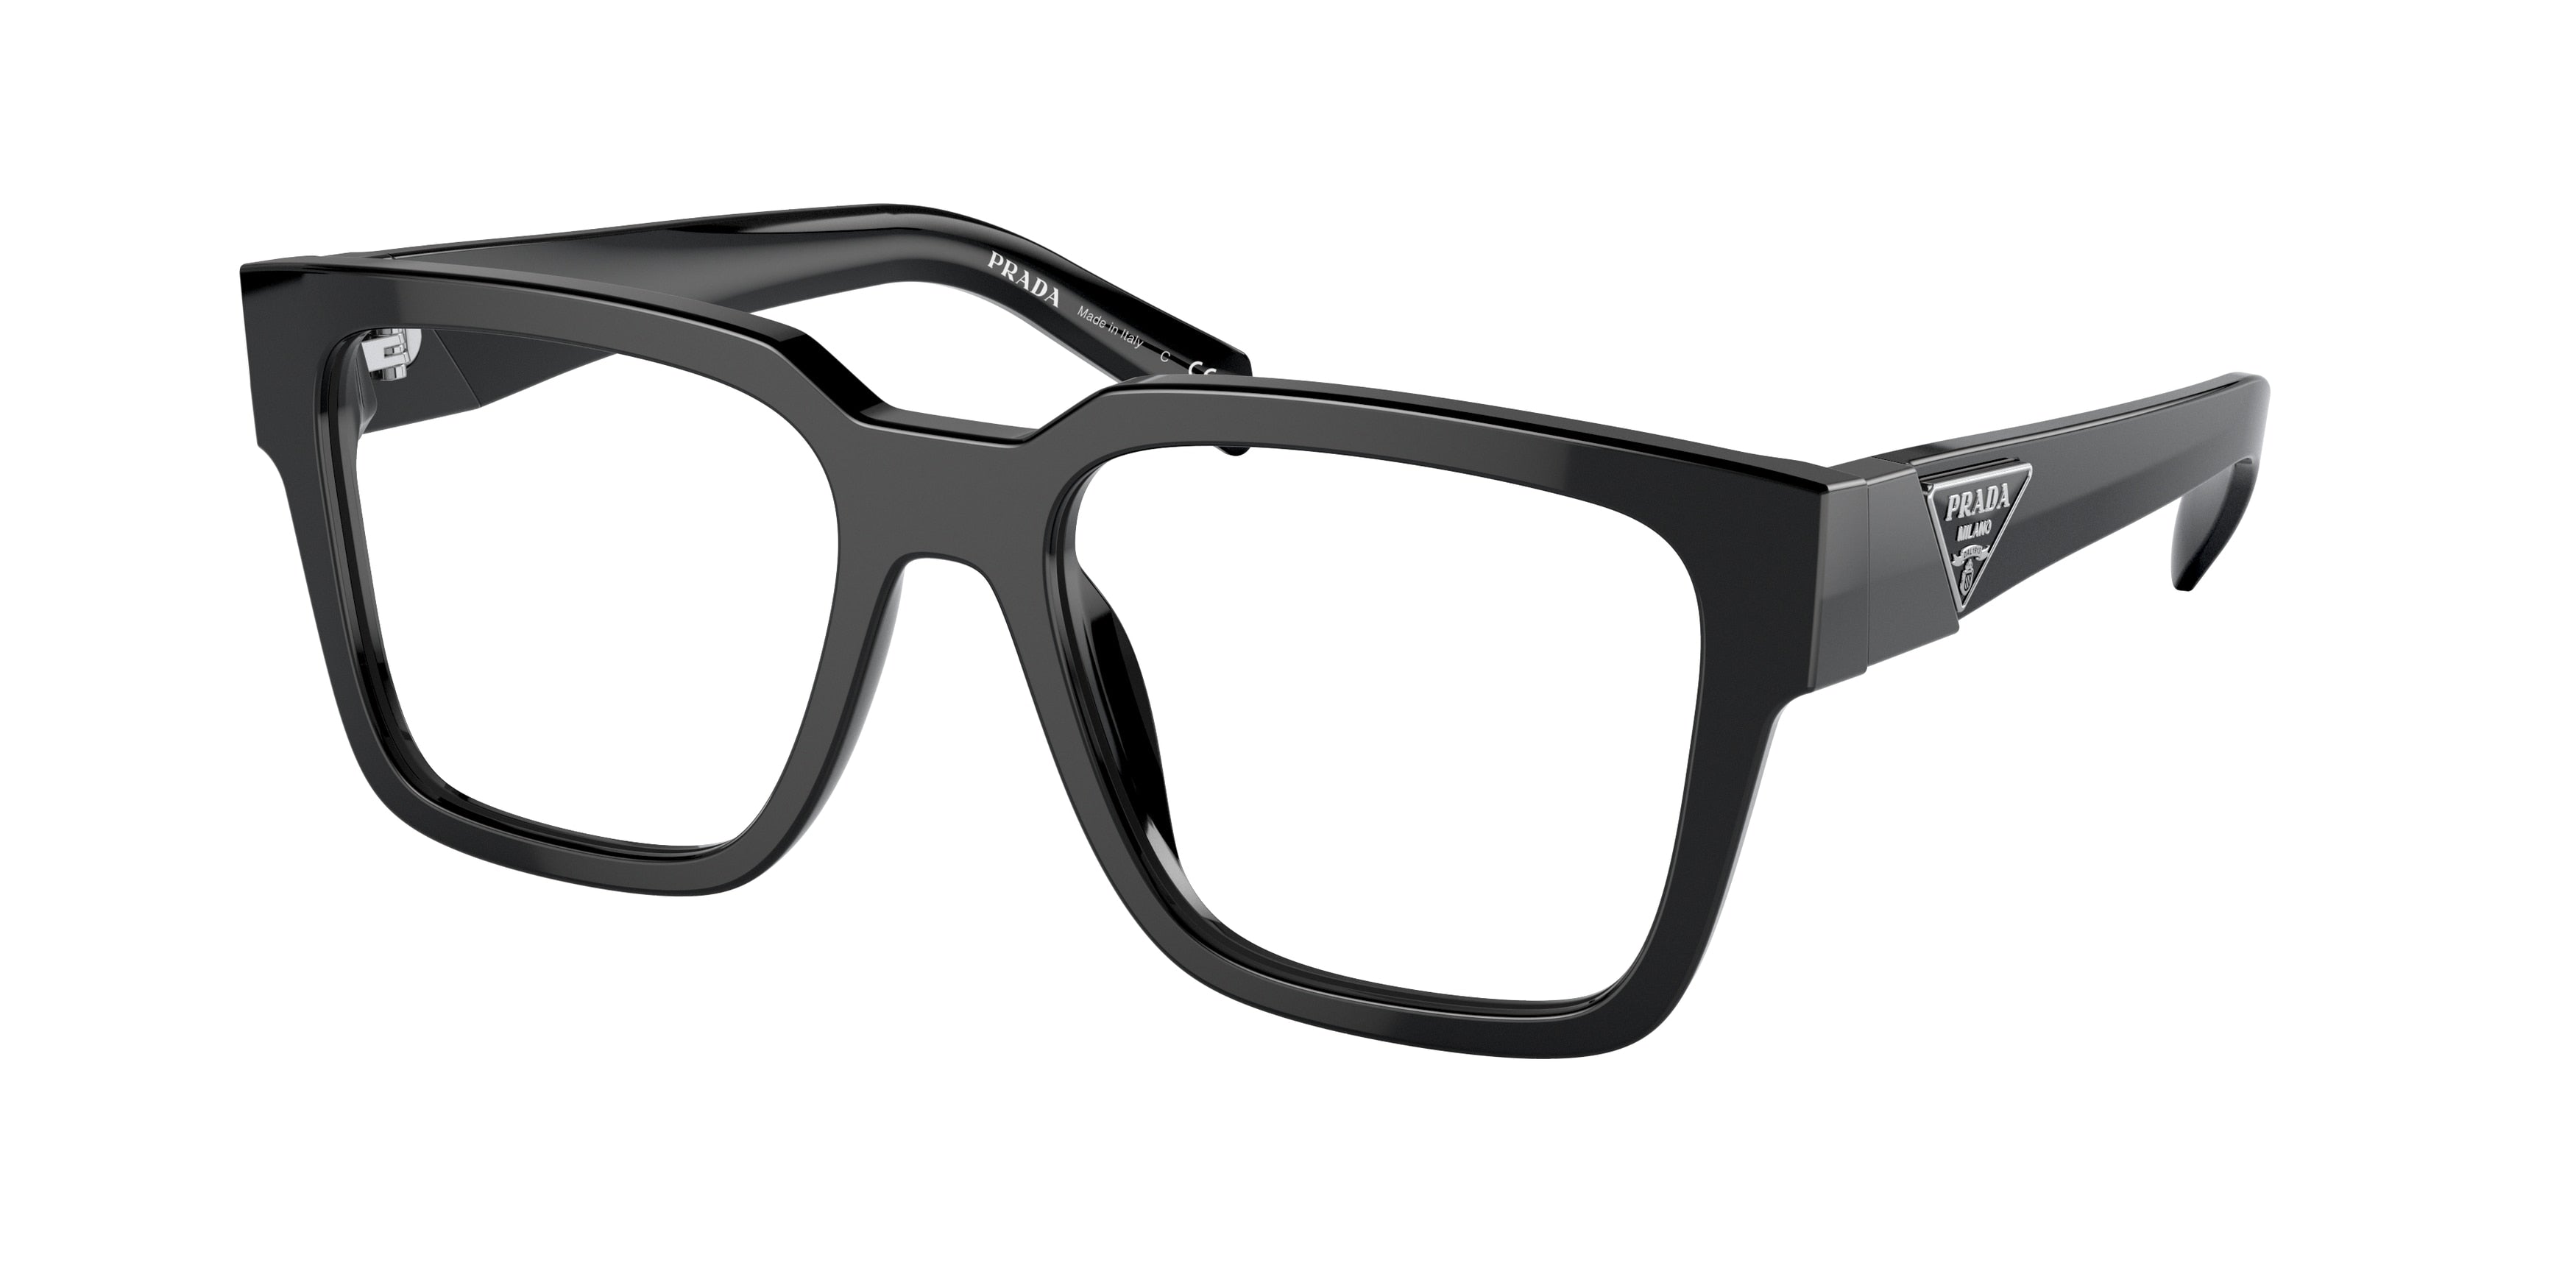 Prada PR08ZVF Square Eyeglasses  1AB1O1-Black 54-140-18 - Color Map Black